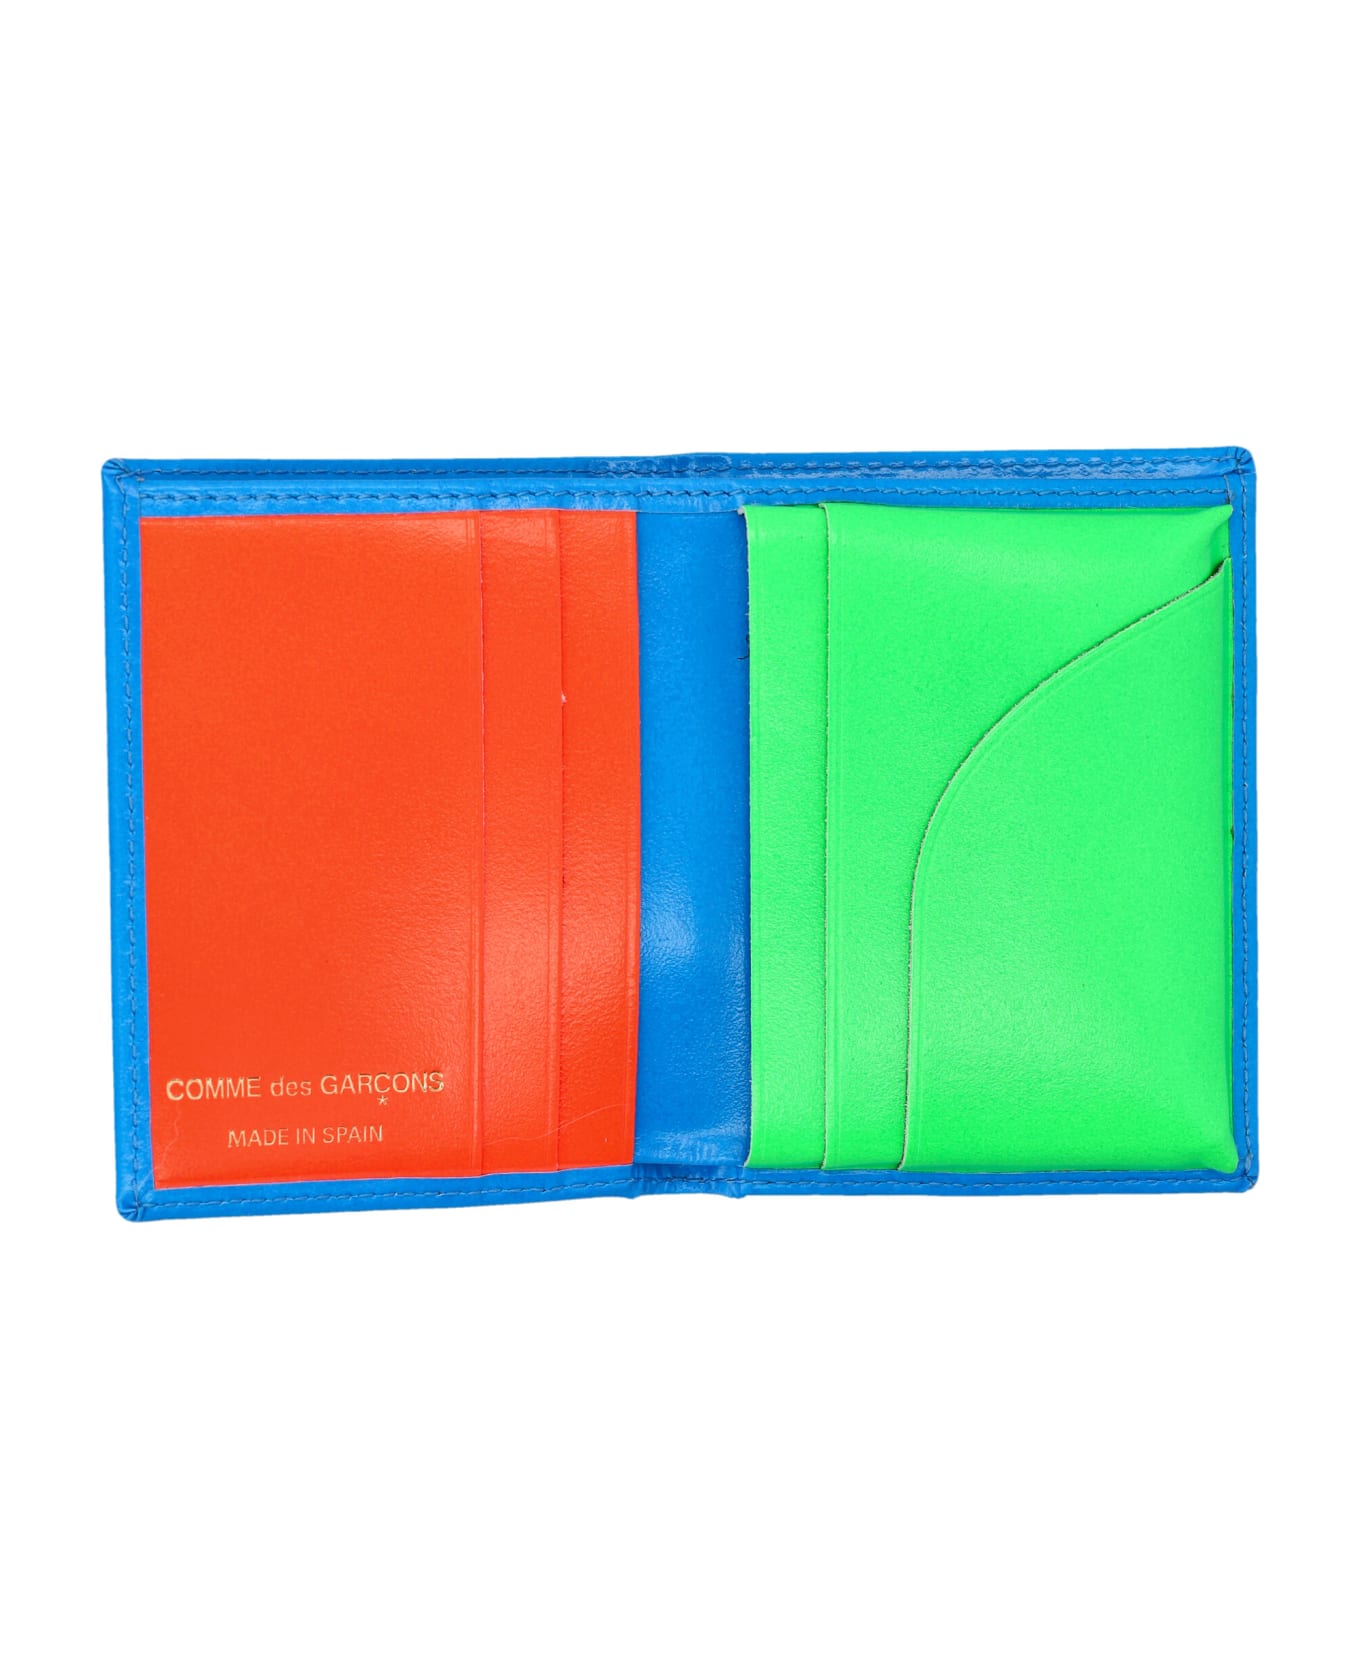 Comme des Garçons Wallet Super Fluo Cardholder - GREEN/BLUE